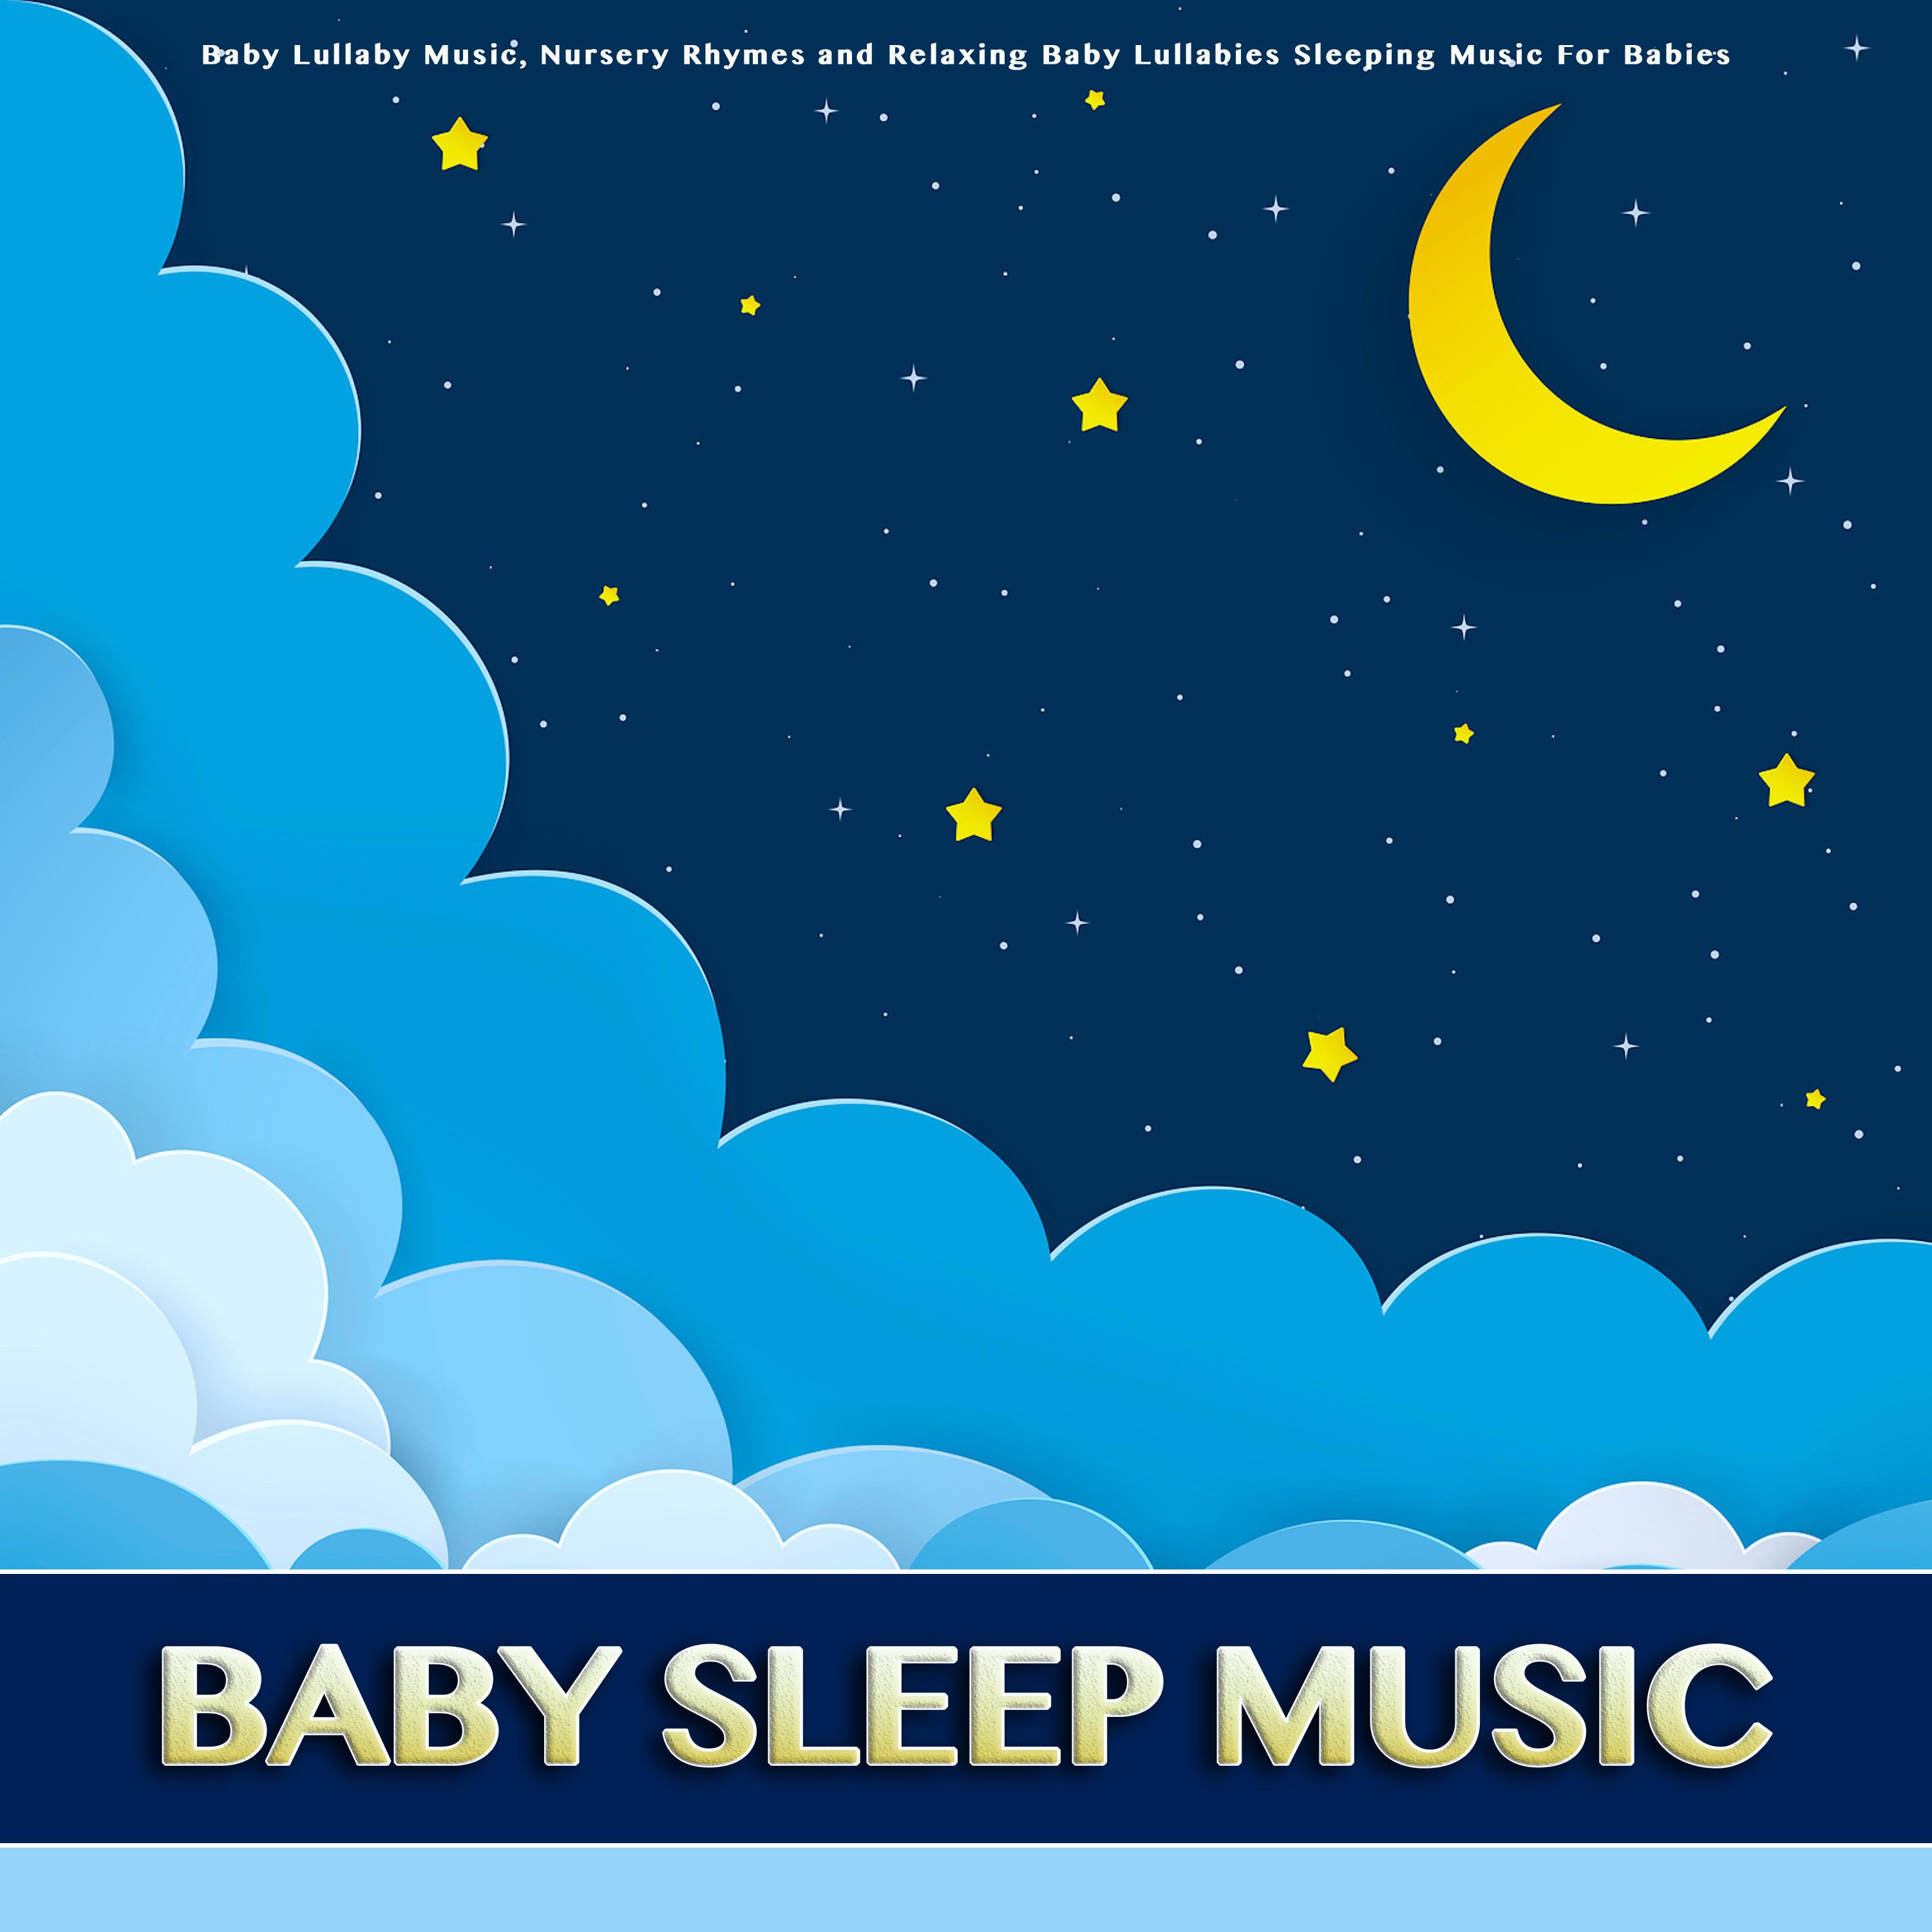 The Wheels On The Bus - Baby Sleep Music - Baby Lullabies - Nursery Rhymes